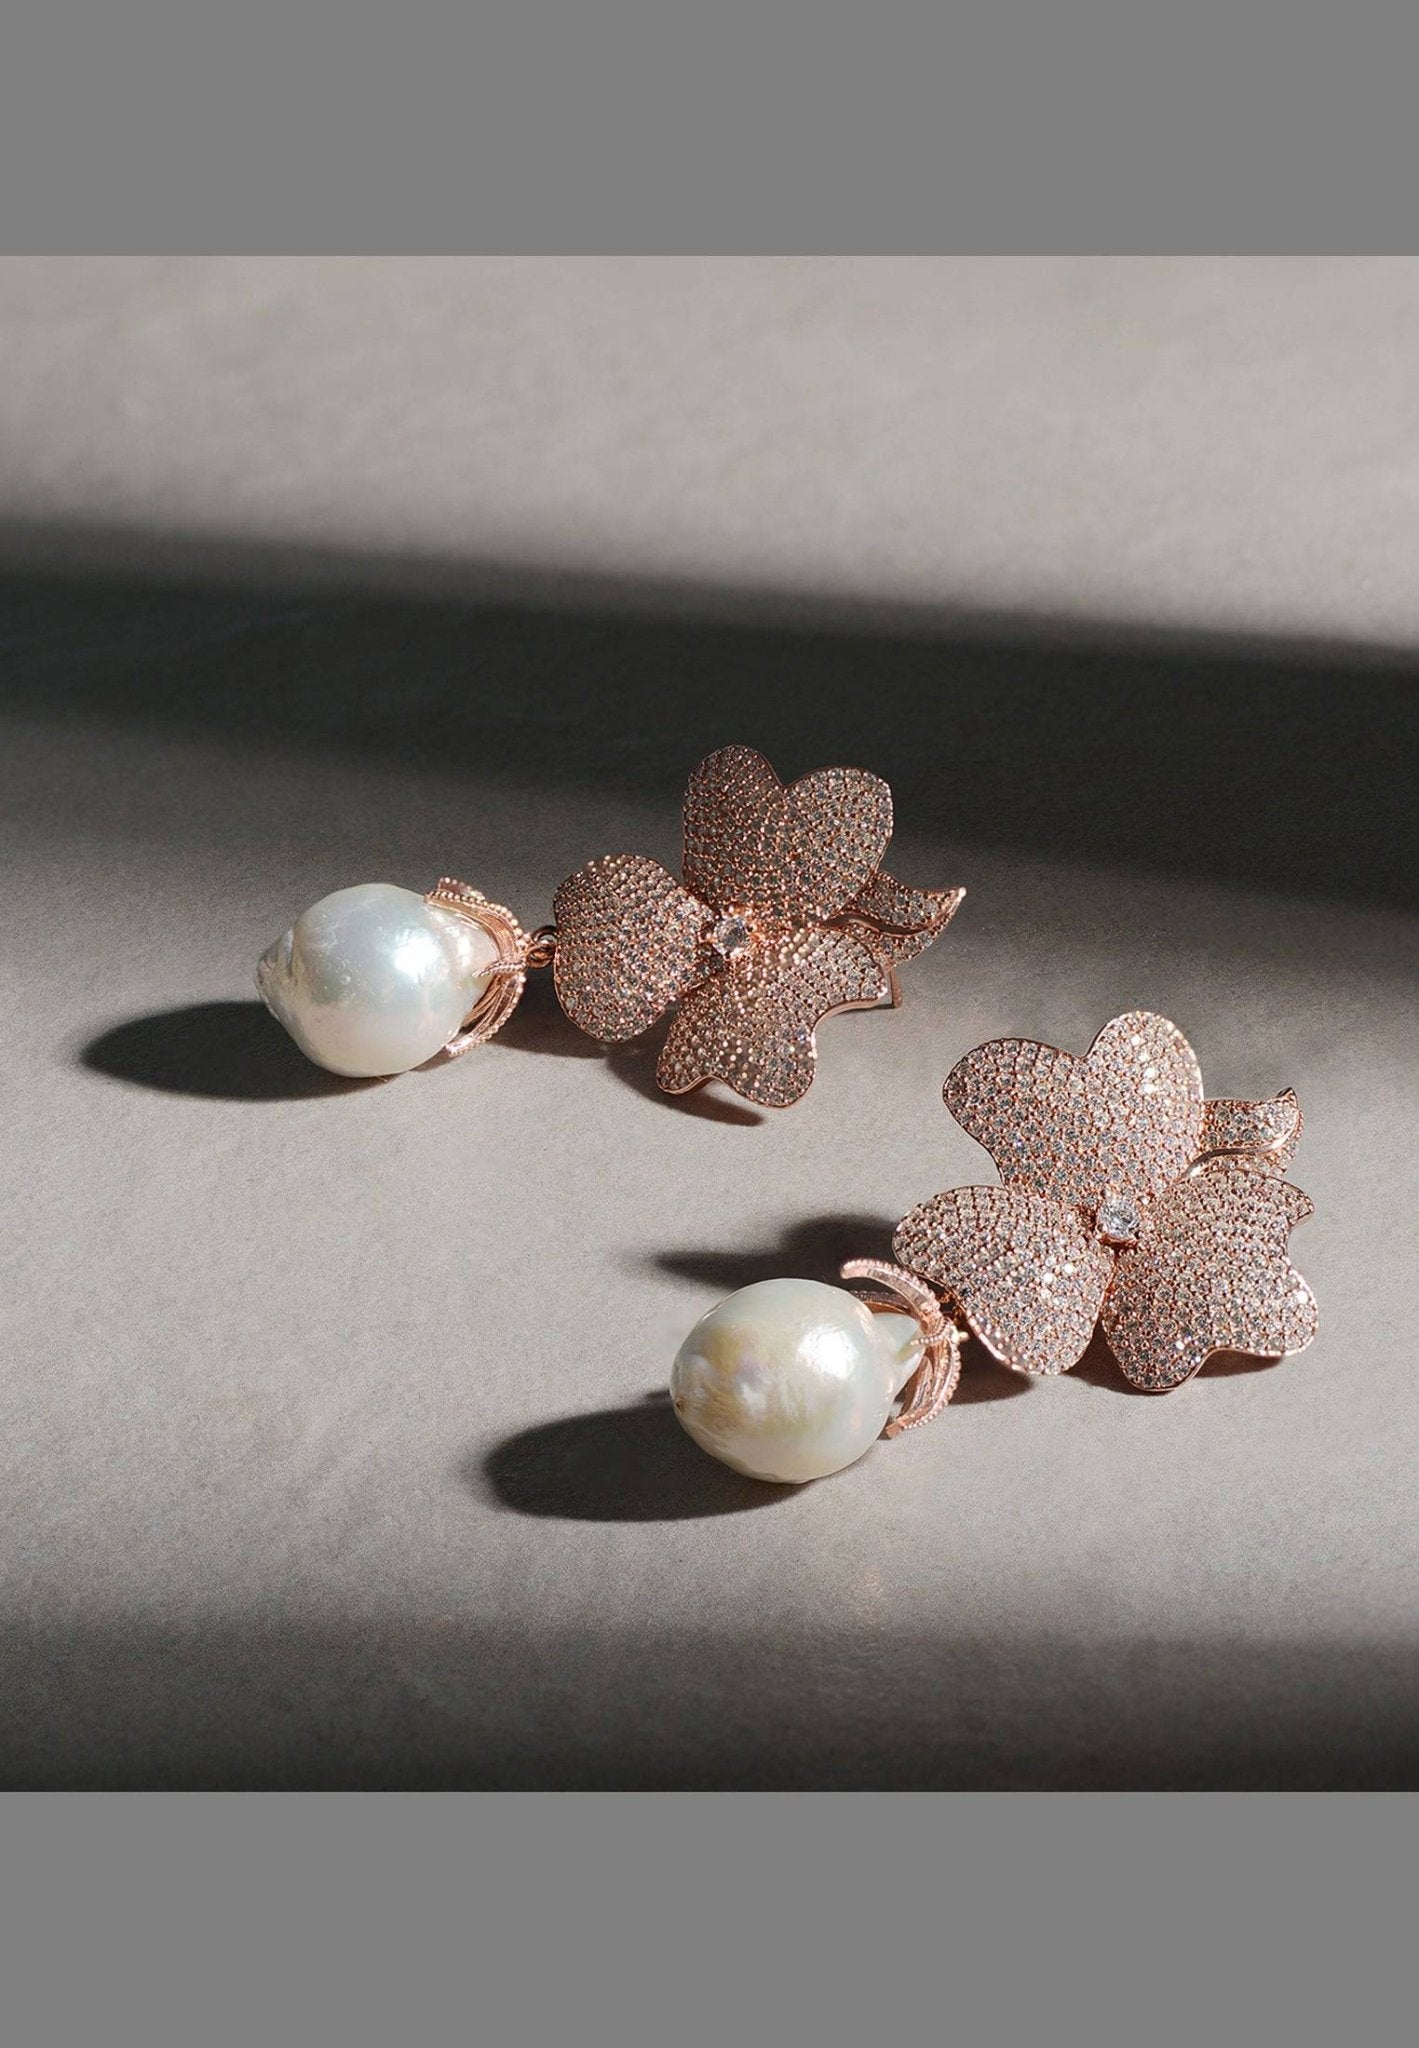 Baroque Pearl White Flower Drop Earrings Rosegold - LATELITA Earrings